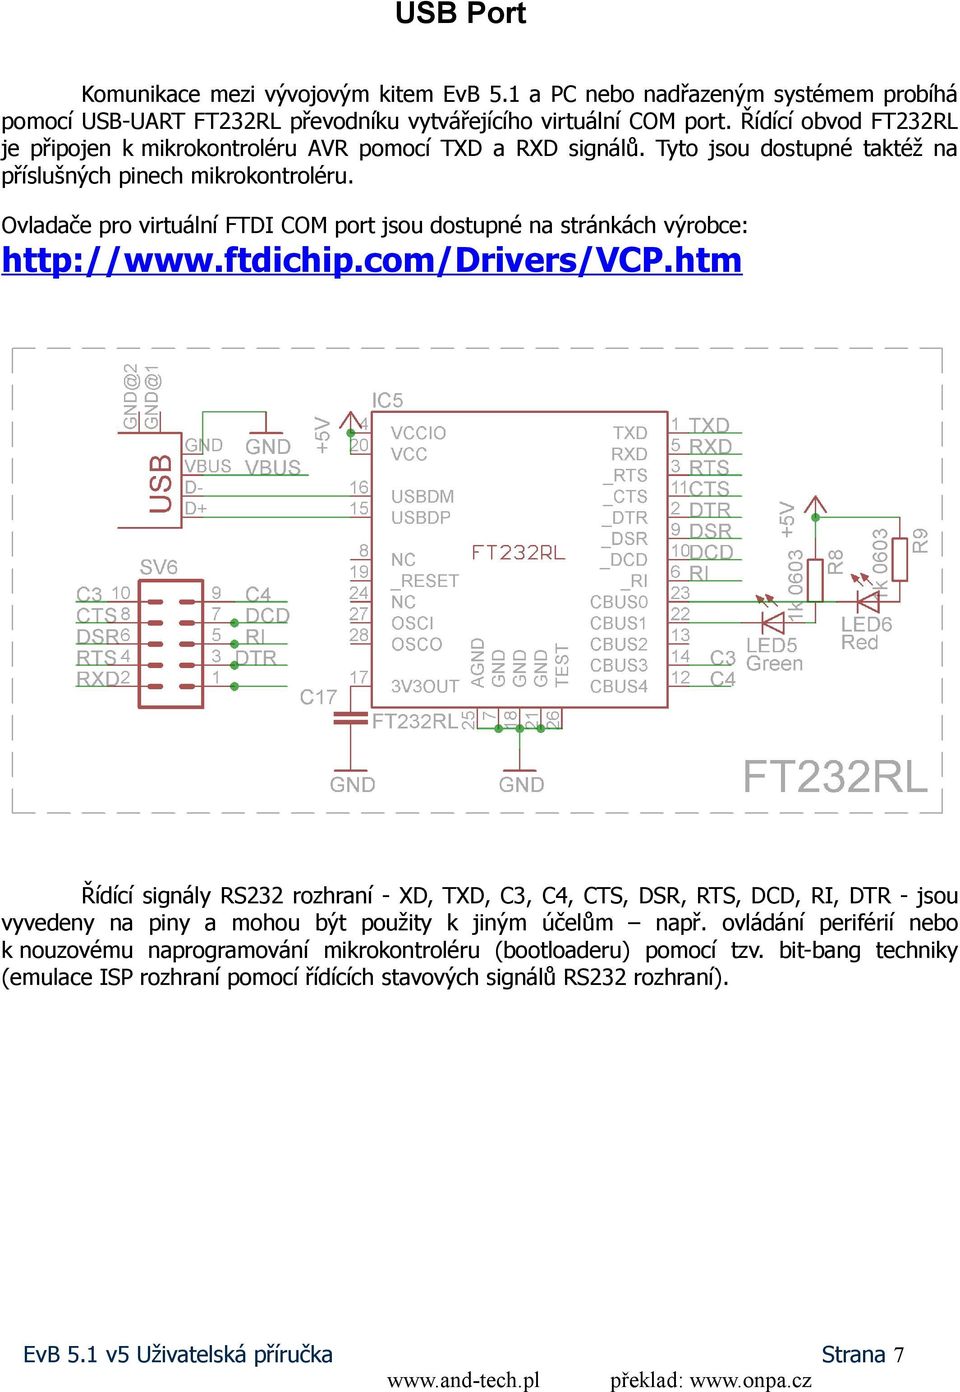 Ovladače pro virtuální FTDI COM port jsou dostupné na stránkách výrobce: http://www.ftdichip.com/drivers/vcp.